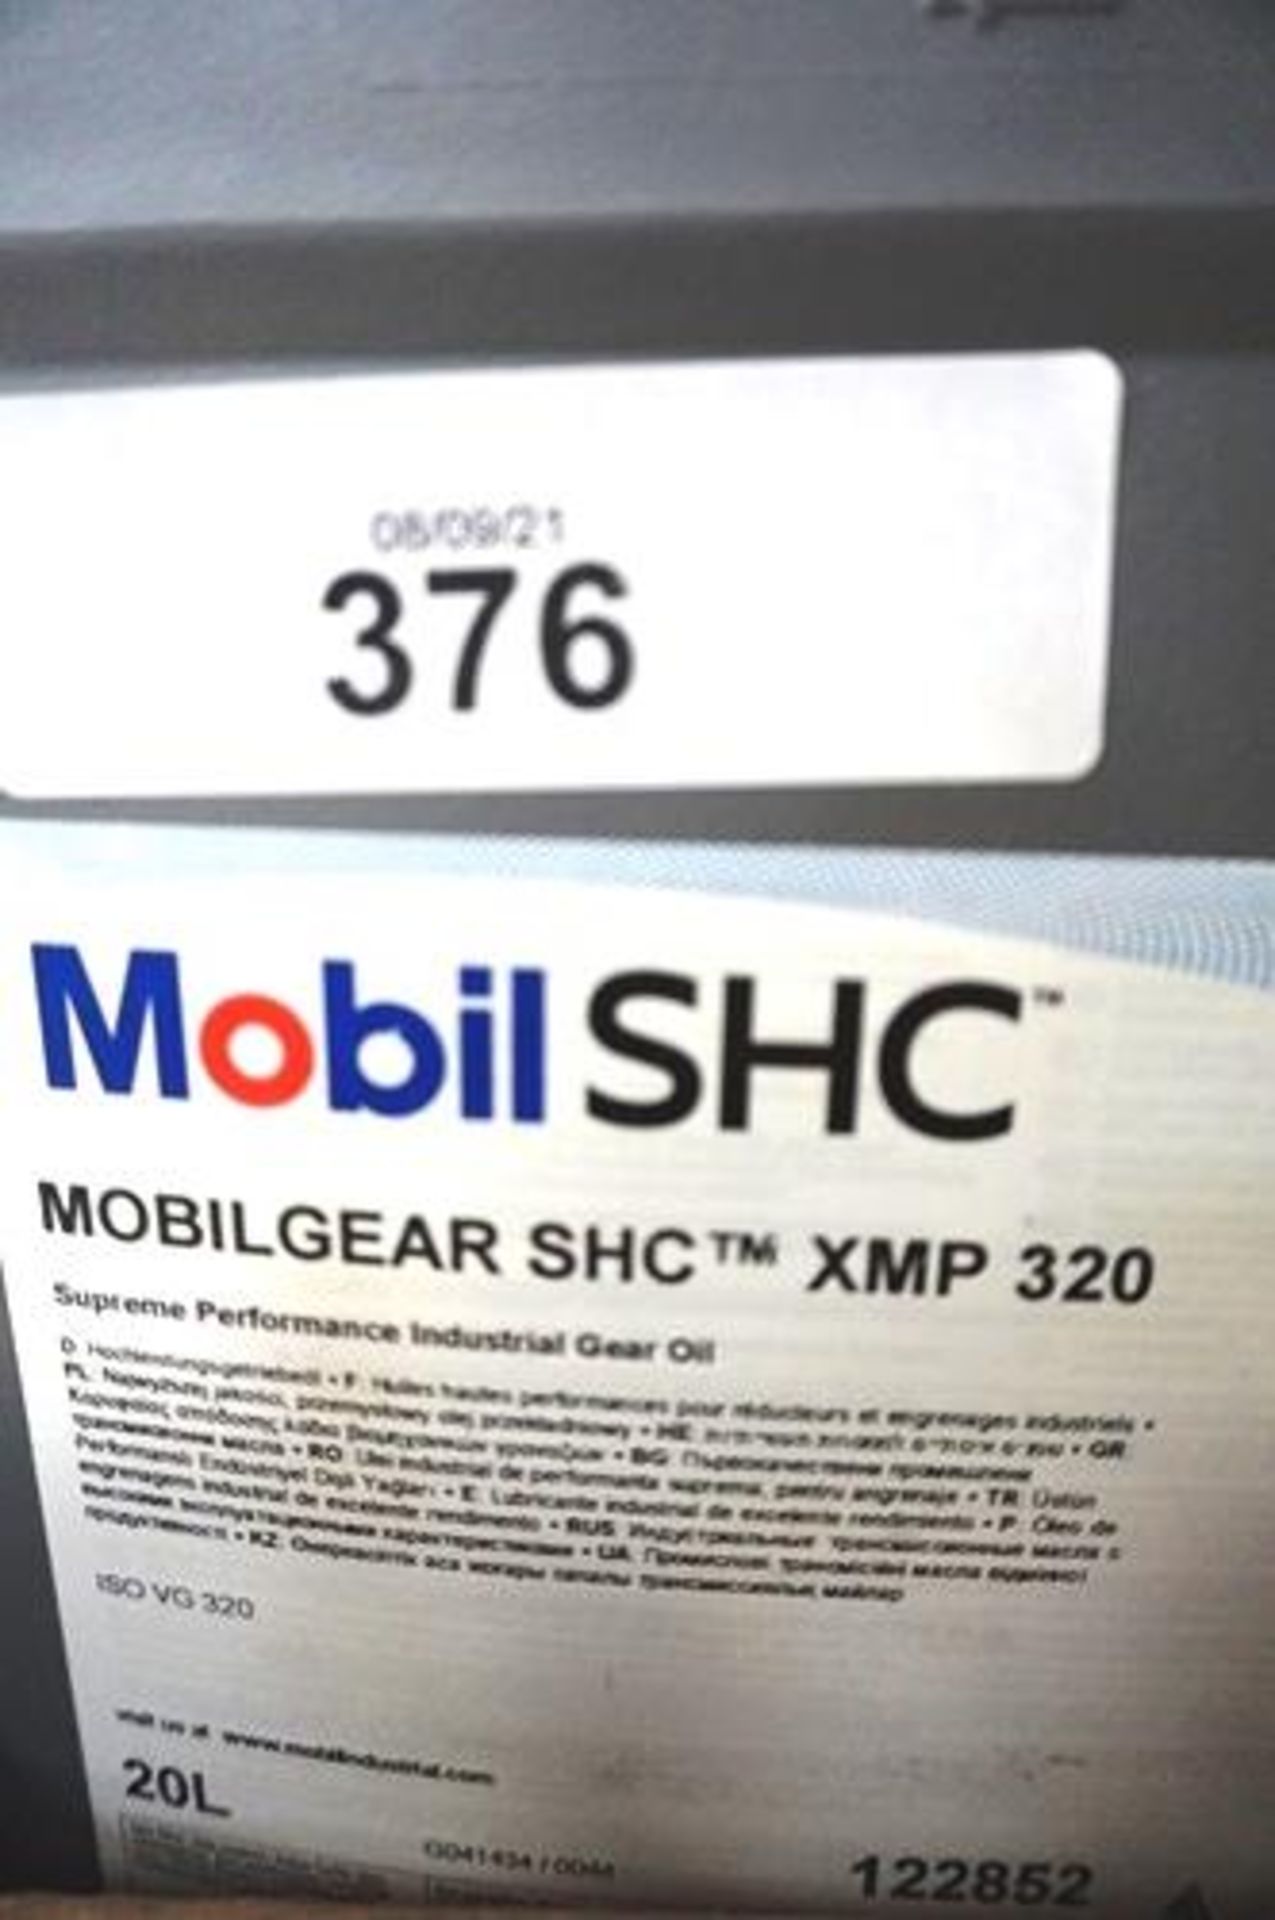 1 x 20ltr bottle of Mobil SHC industrial gear oil, XMP 320 - New (GS13)